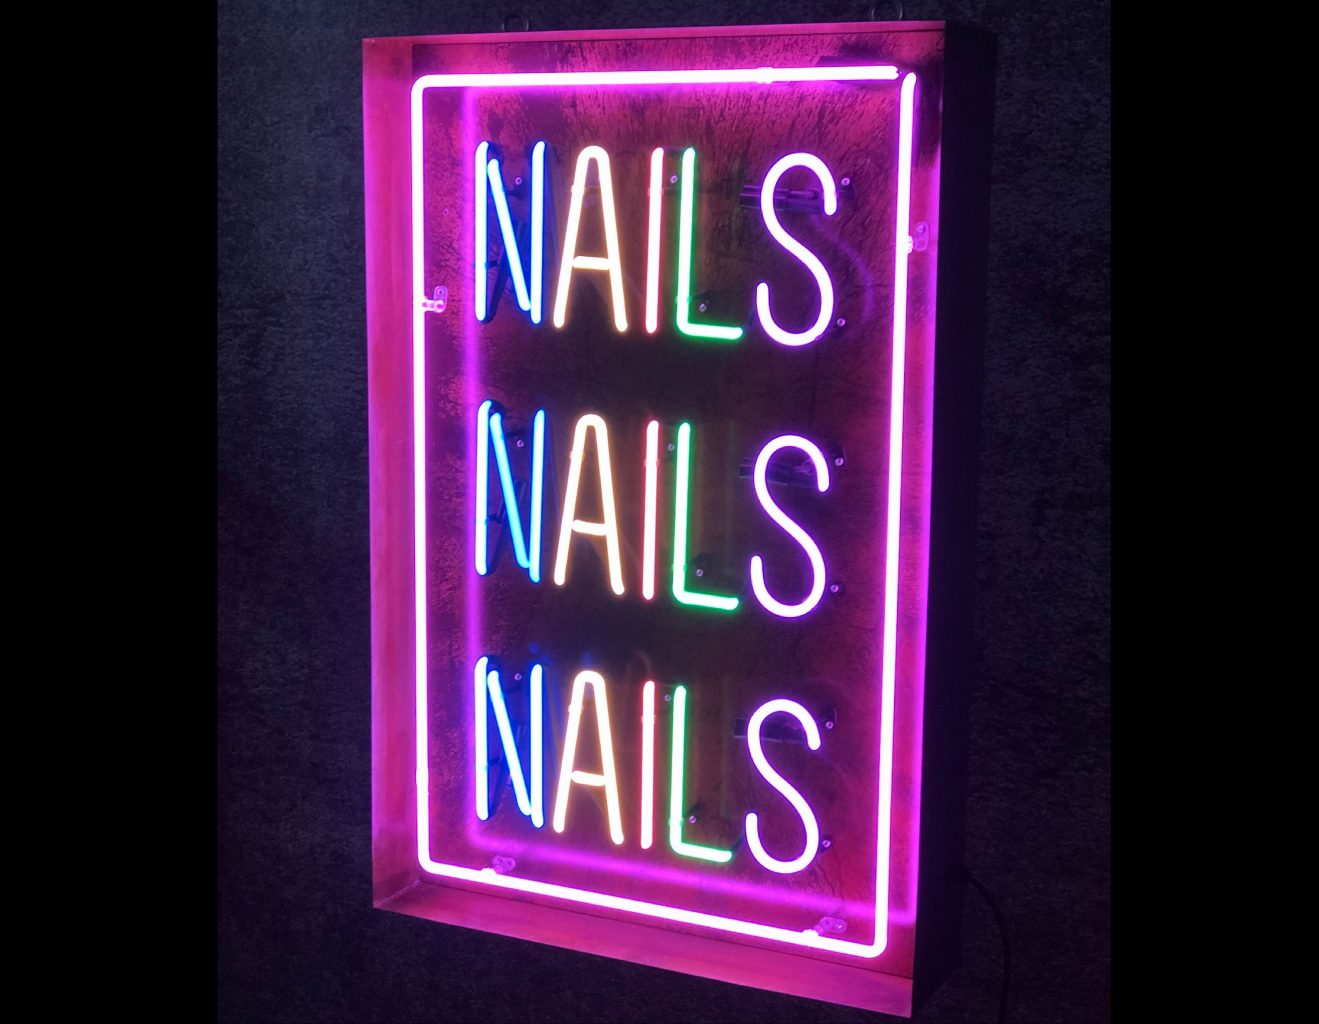 Neon Nails Nails Nails - Kemp London - Bespoke neon signs and prop hire.